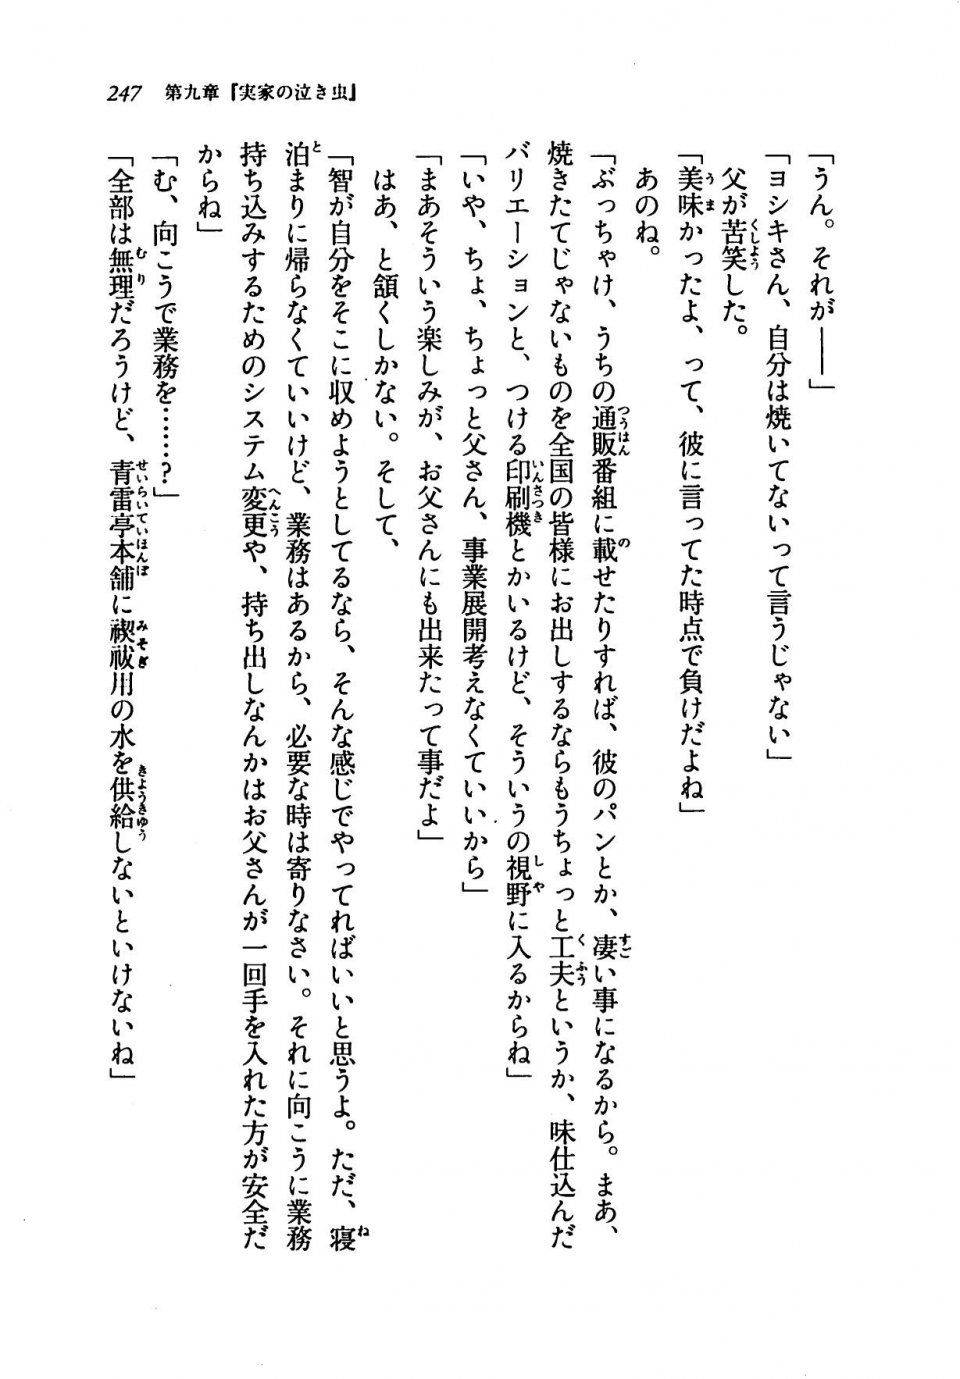 Kyoukai Senjou no Horizon LN Vol 19(8A) - Photo #247